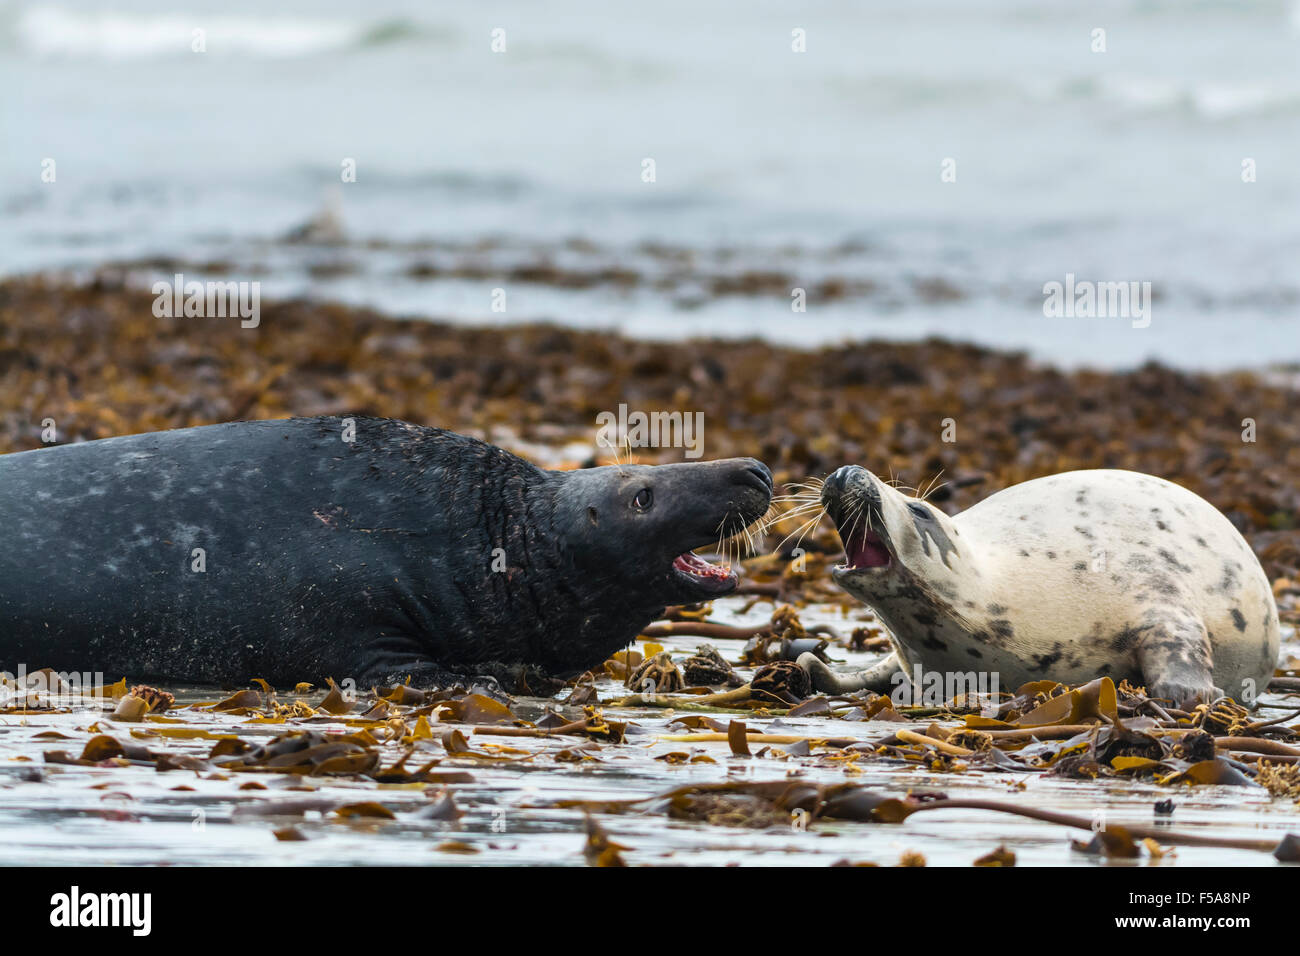 Le foche grigie (Halichoerus grypus), femmina interagenti con bull, Isola di Helgoland, Schleswig-Holstein, Germania Foto Stock